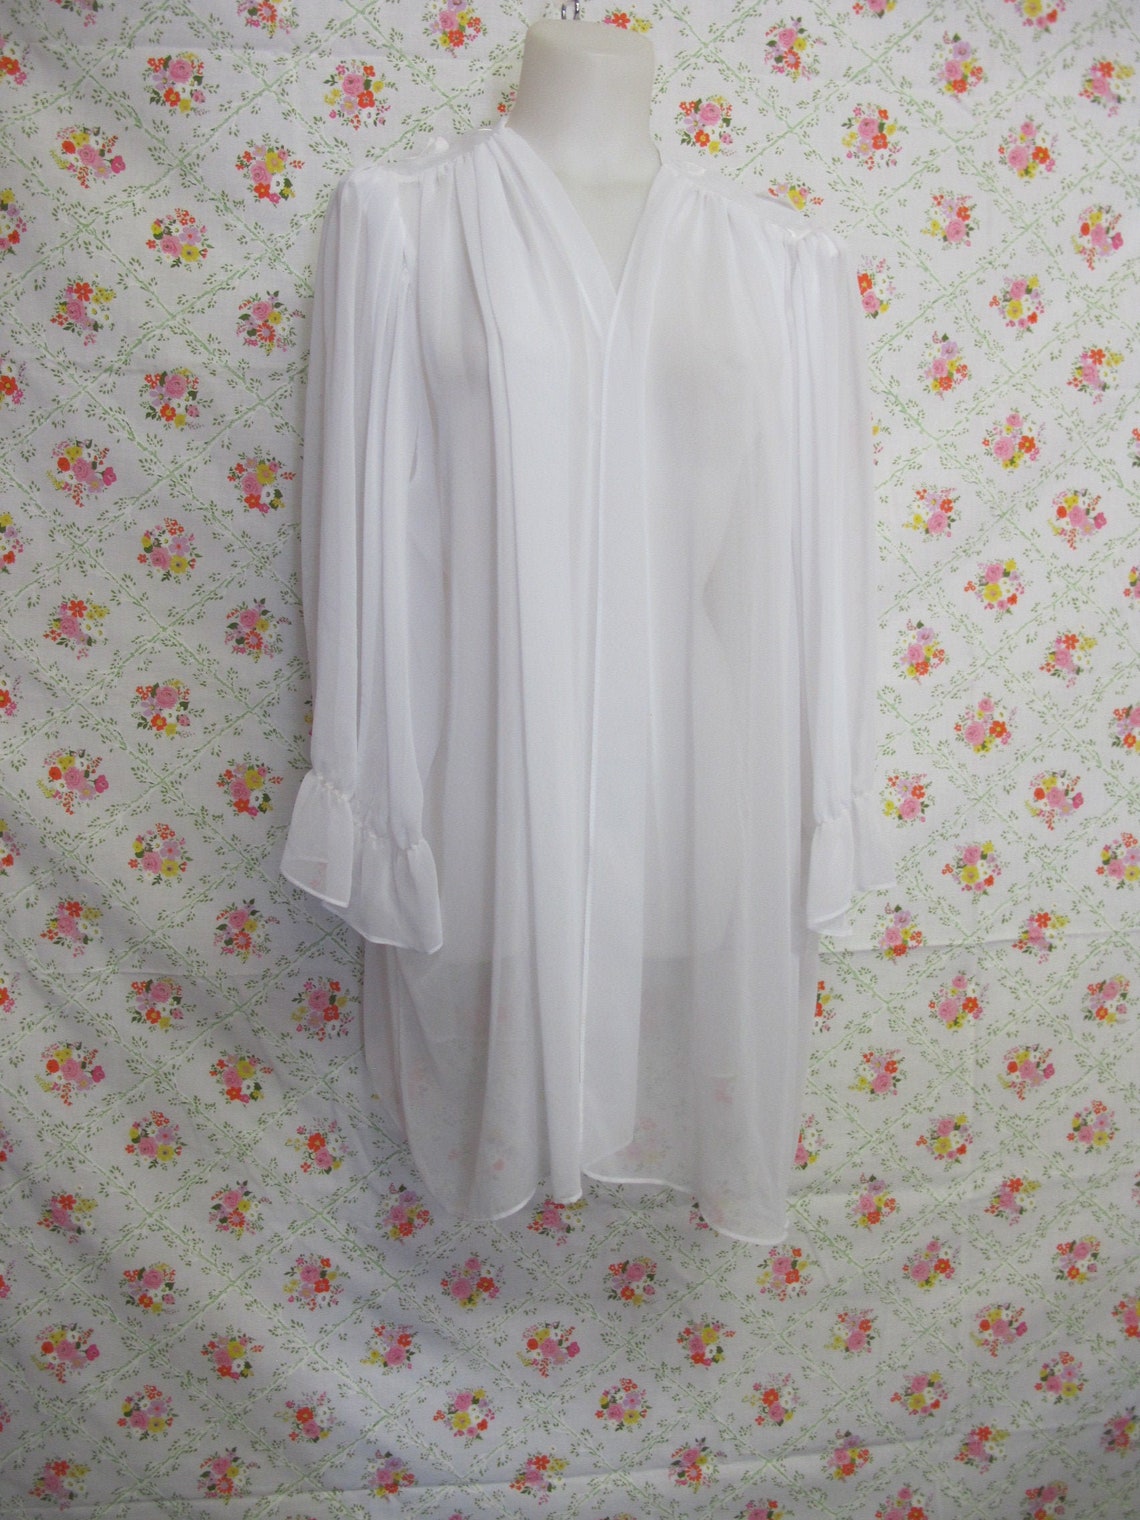 Chiffon Robe Short White Peignoir Sheer Nylon Robe - Etsy